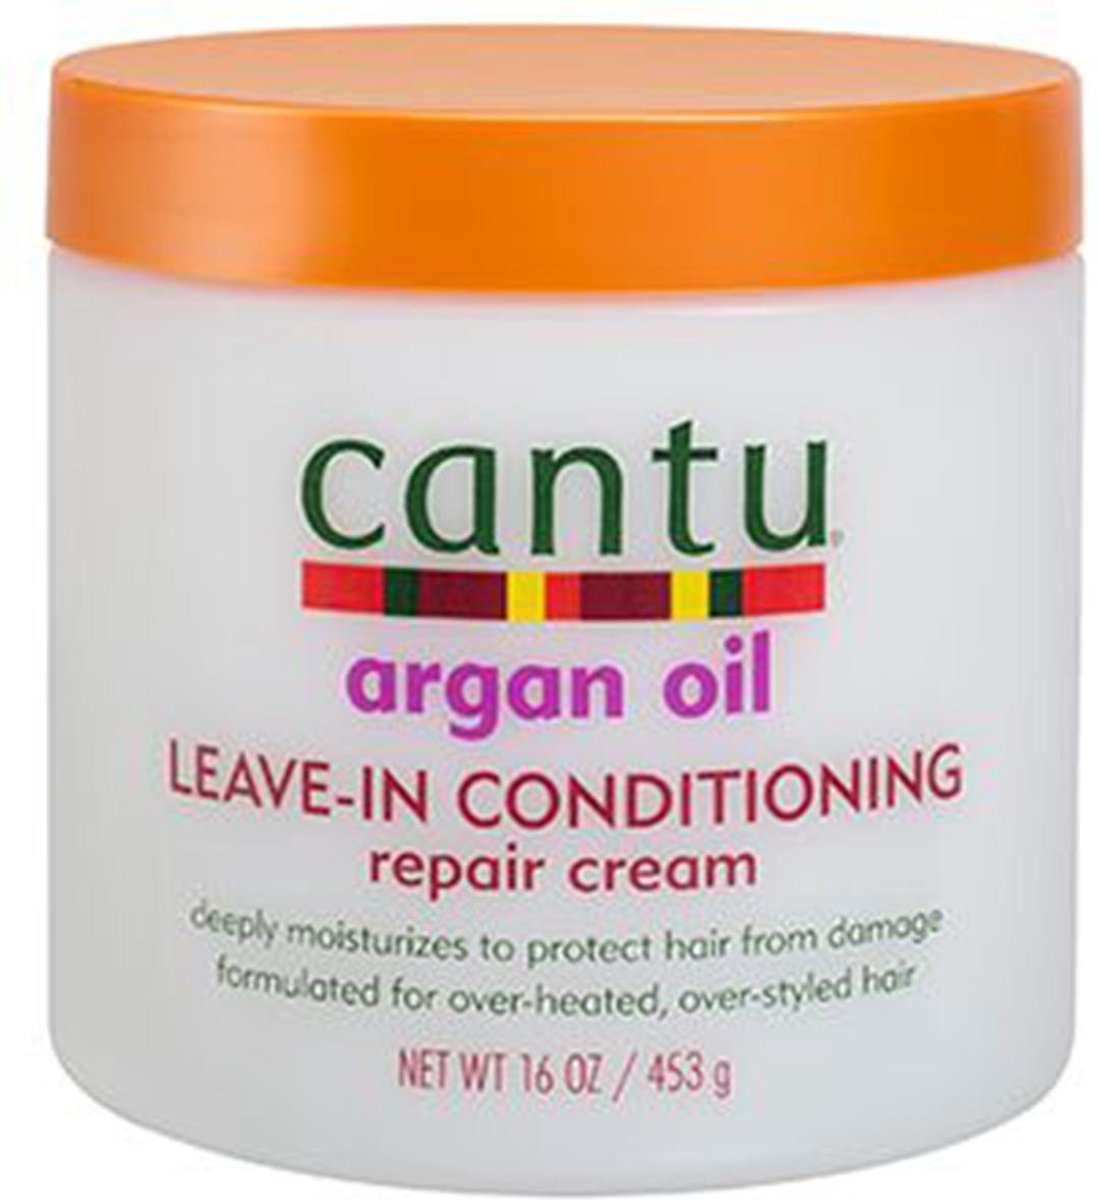 cantu Argan oil Leave in conditioner